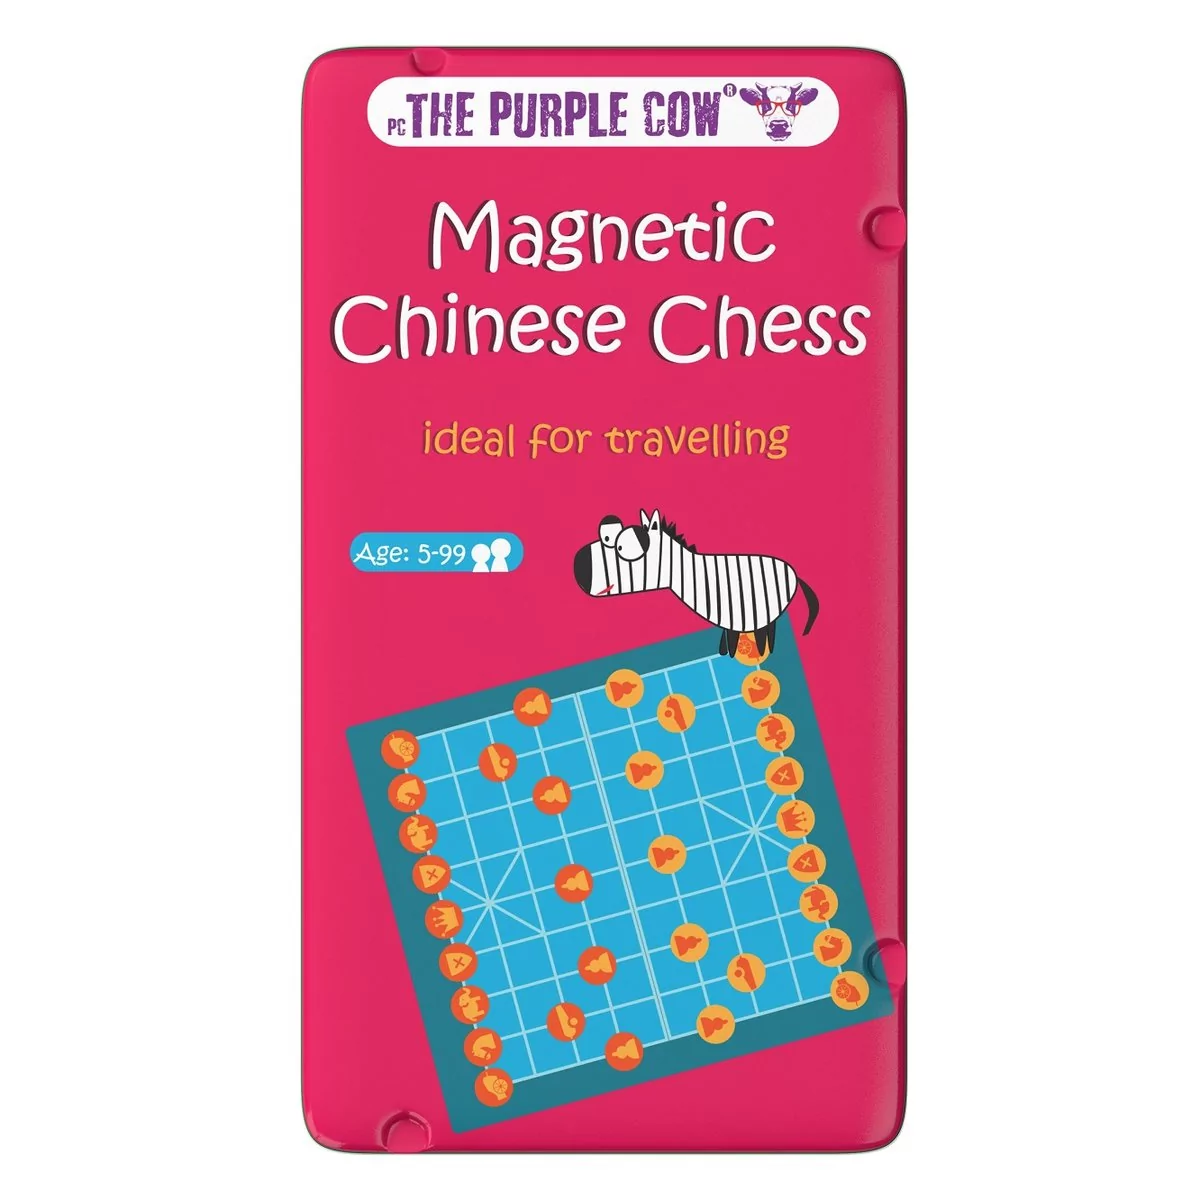 The Purple Cow, podróżna gra magnetyczna Chińskie Szachy